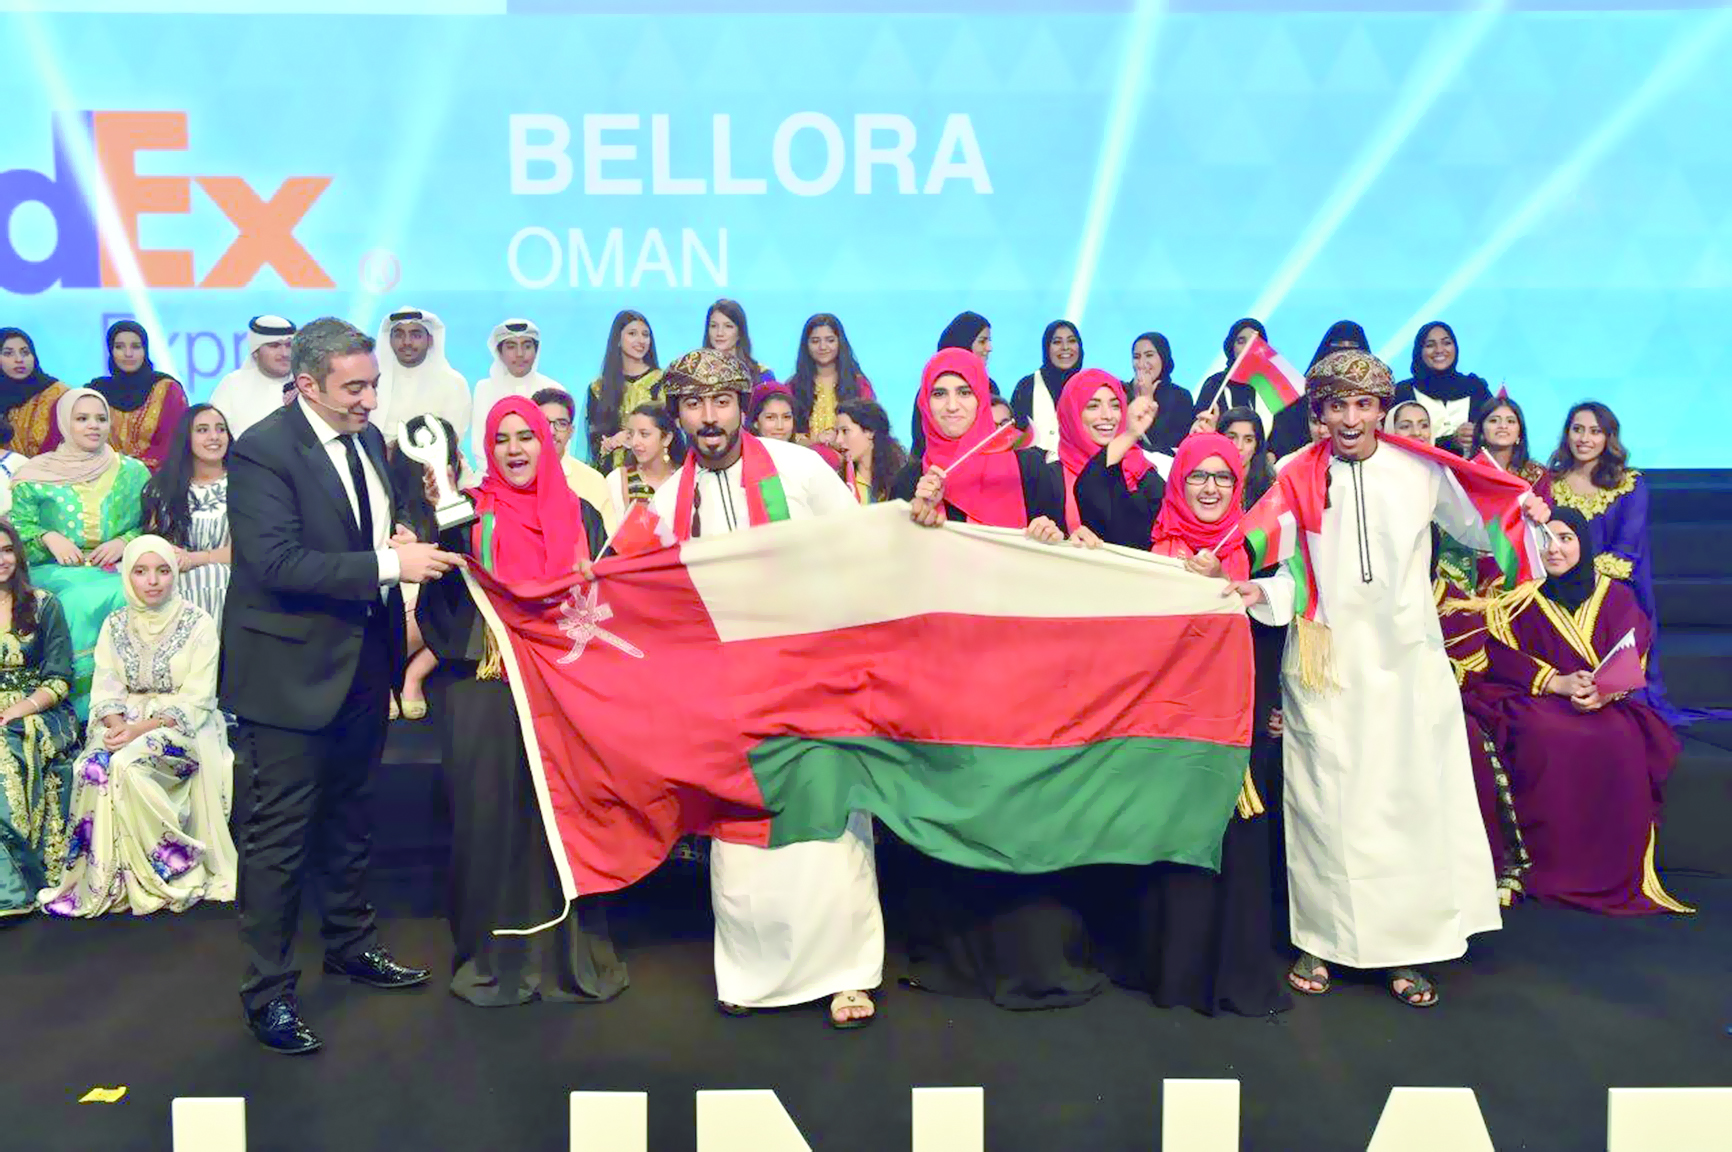 الشركة الطلابية "بلورة" تفوز بجائزة ضمن مسابقة إنجاز العرب